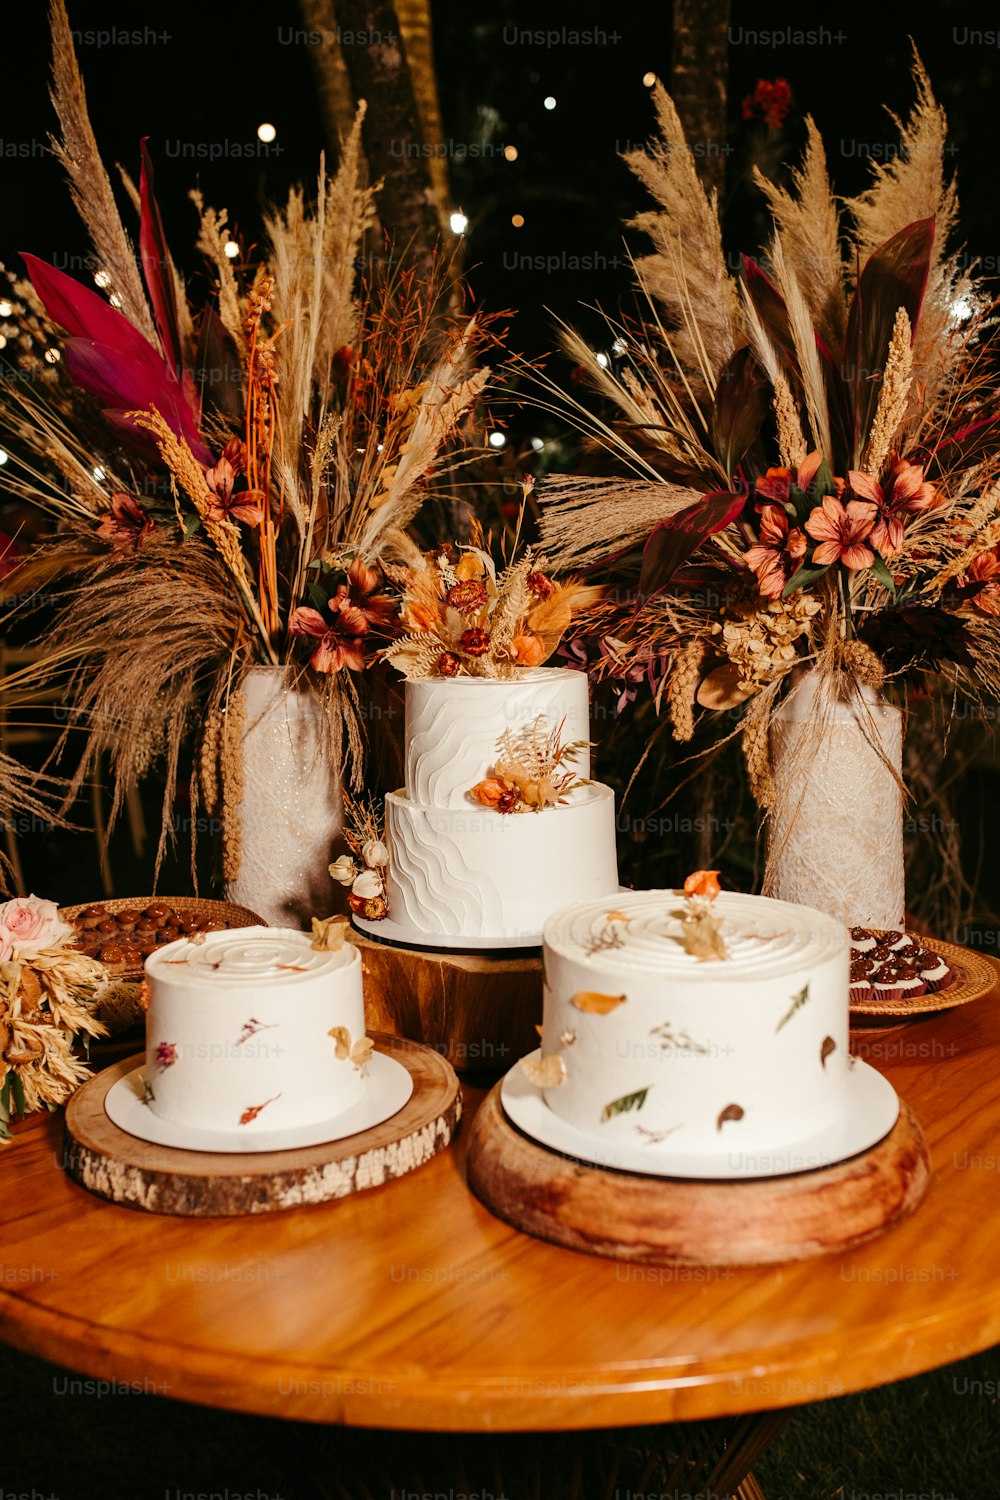 un tavolo sormontato da tre torte bianche ricoperte di glassa